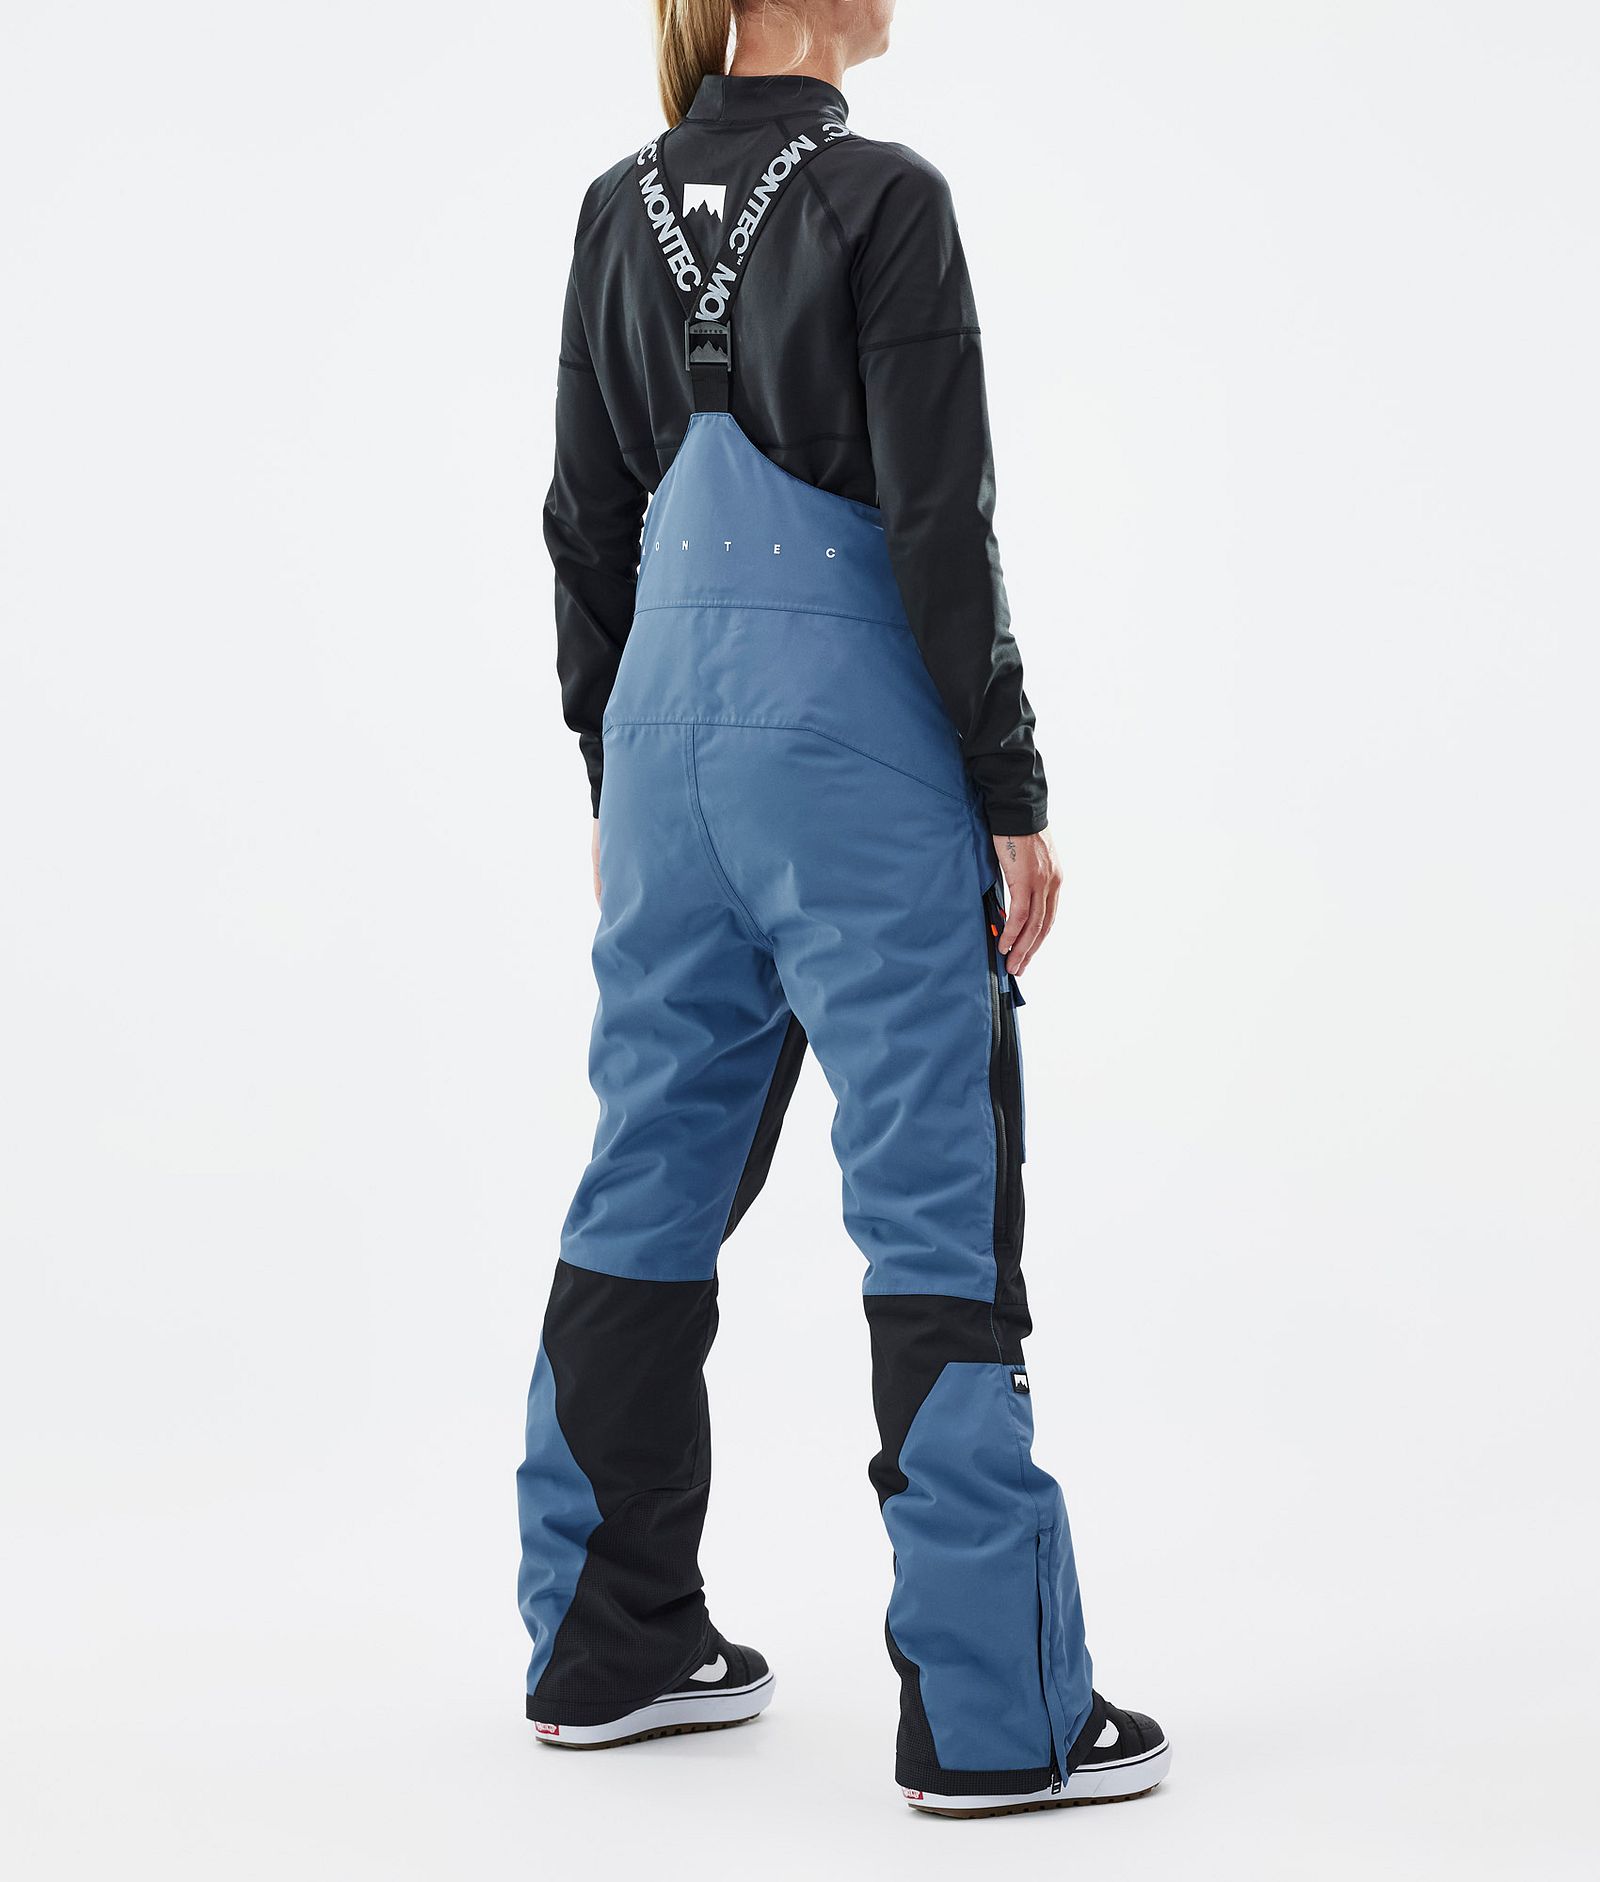 Fawk W Pantalon de Snowboard Femme Blue Steel/Black